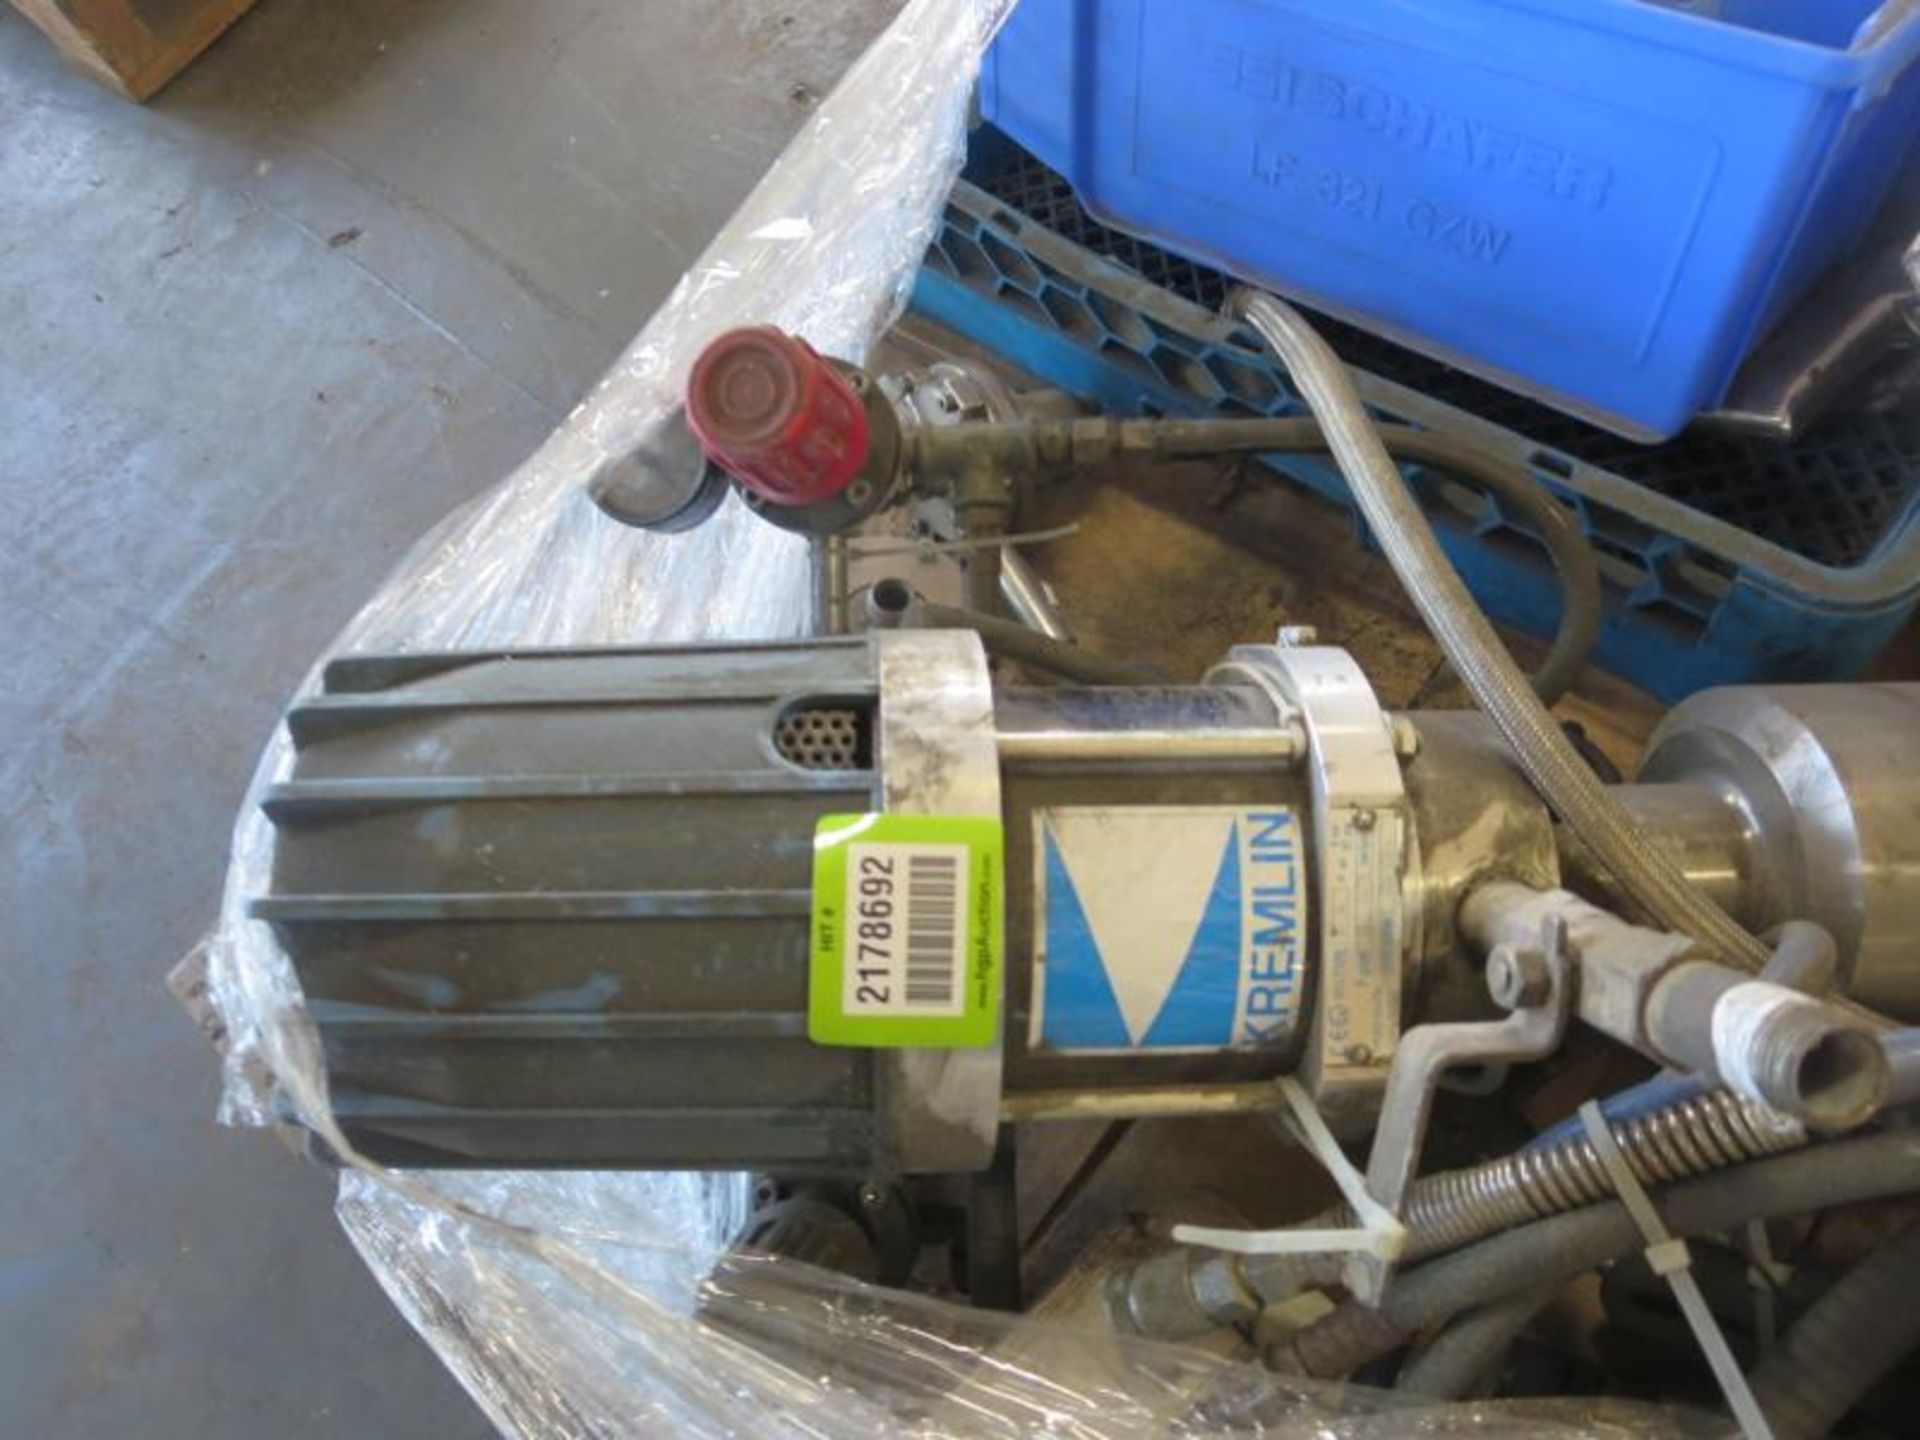 Kremlin Rexson Type T 4 Spray Pump with skid of misc parts. Hit # 2178692. M6-M7. Asset Located at - Bild 2 aus 4